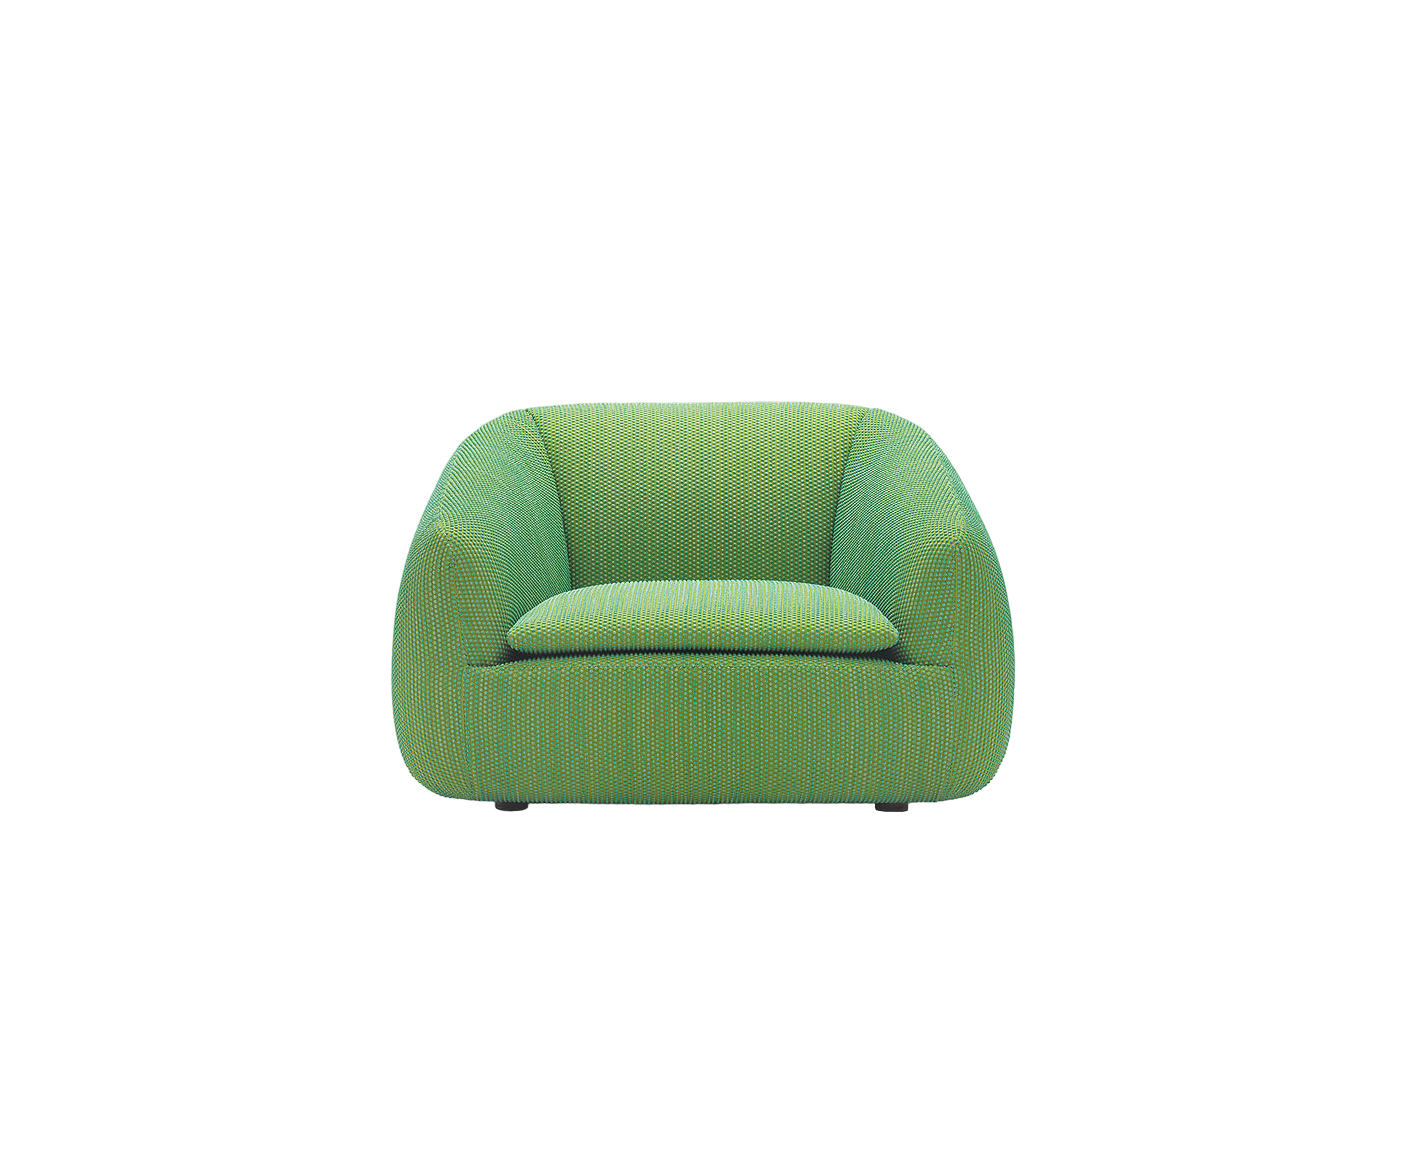 Bask S Lounge Chair | Paola Lenti 